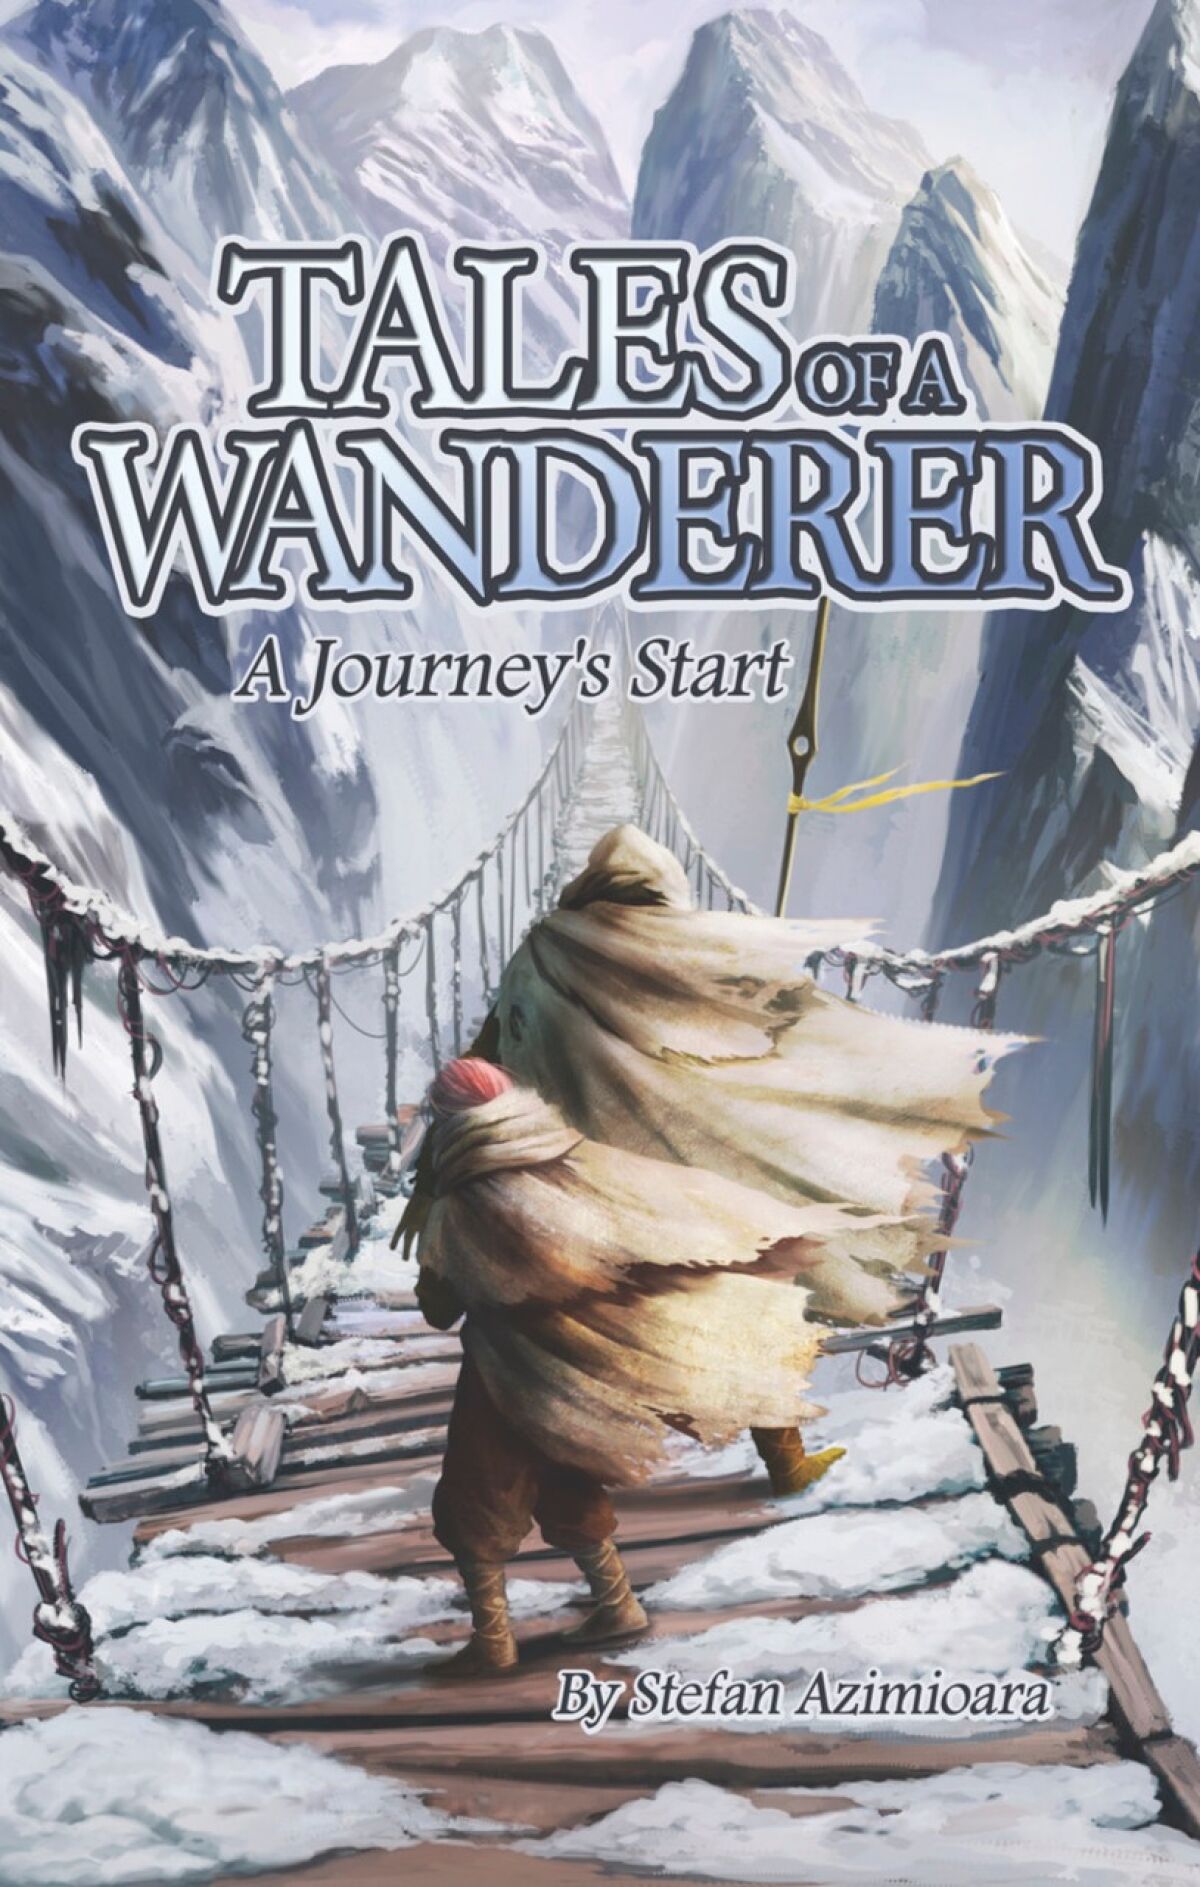 "Tales of a Wanderer" is the debut novel from La Jolla resident and La Jolla High School graduate Stefan Azimioara.